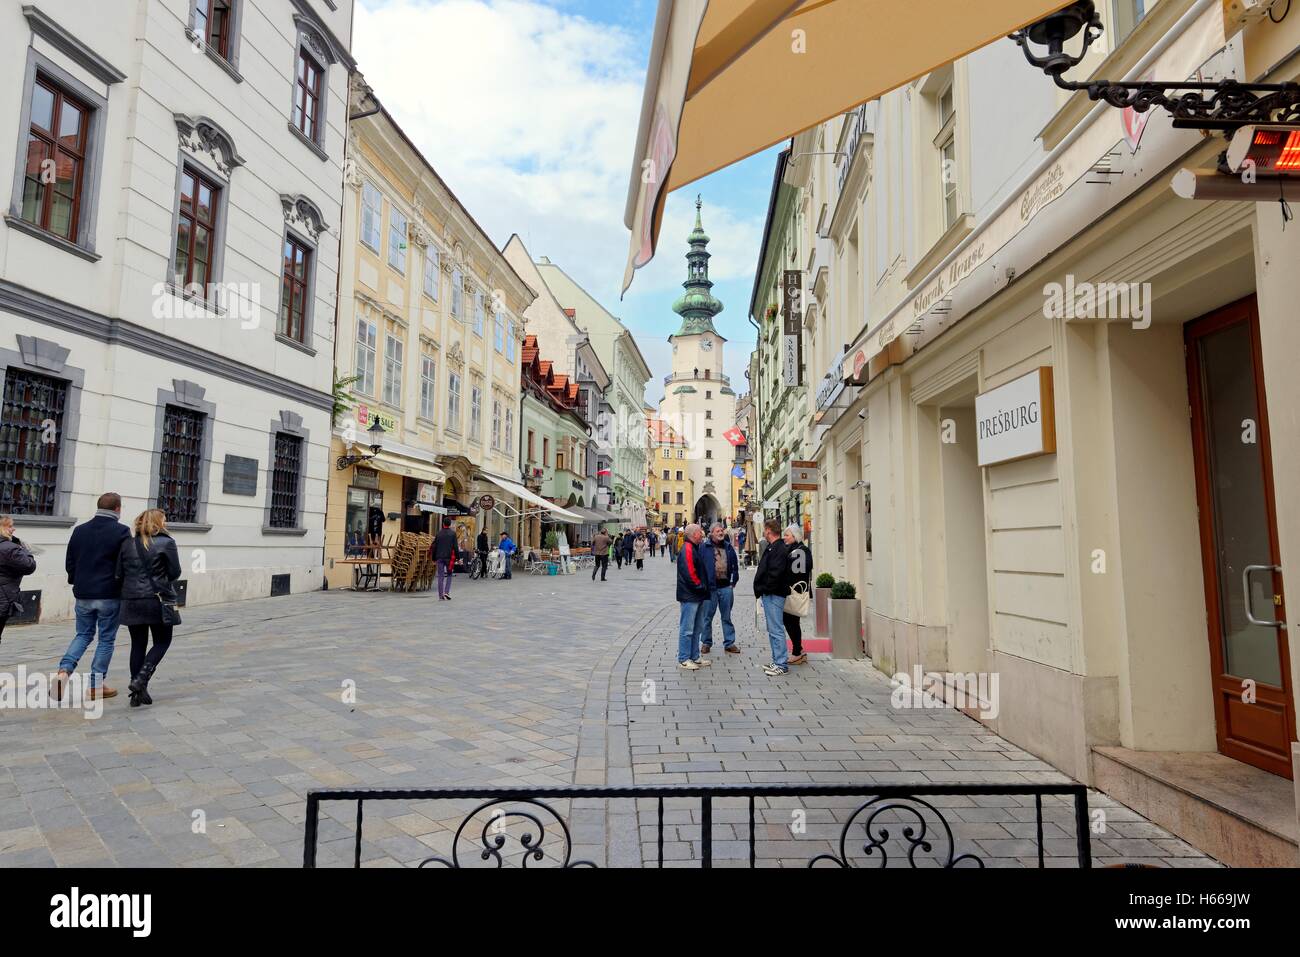 Historic old town in Bratislava Slovakia Europe Stock Photo